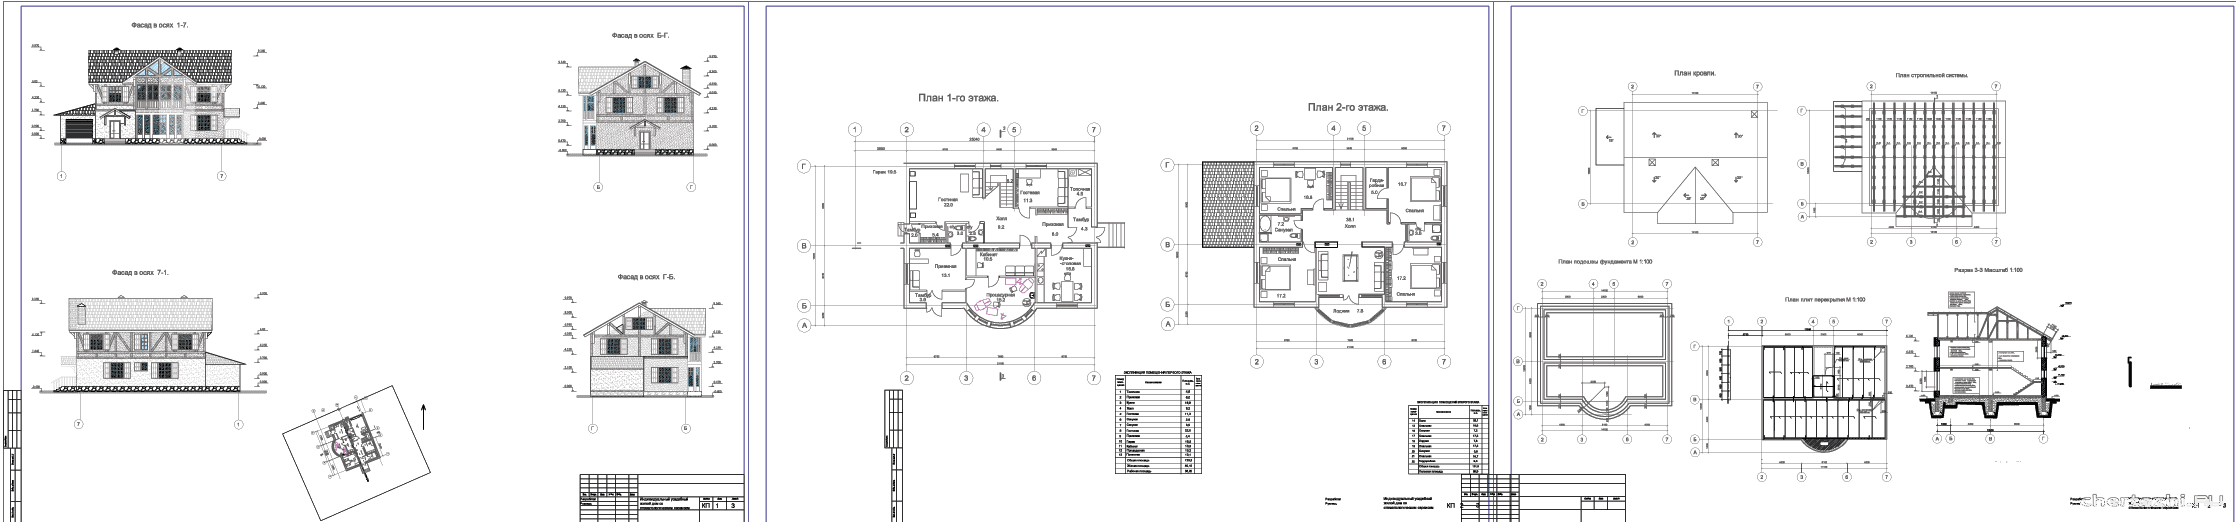 Курсовой проект - Двухэтажный индивидуальный усадебный жилой дом со стоматологическим сервисом 14,09 х 18,00 м в г. Омск